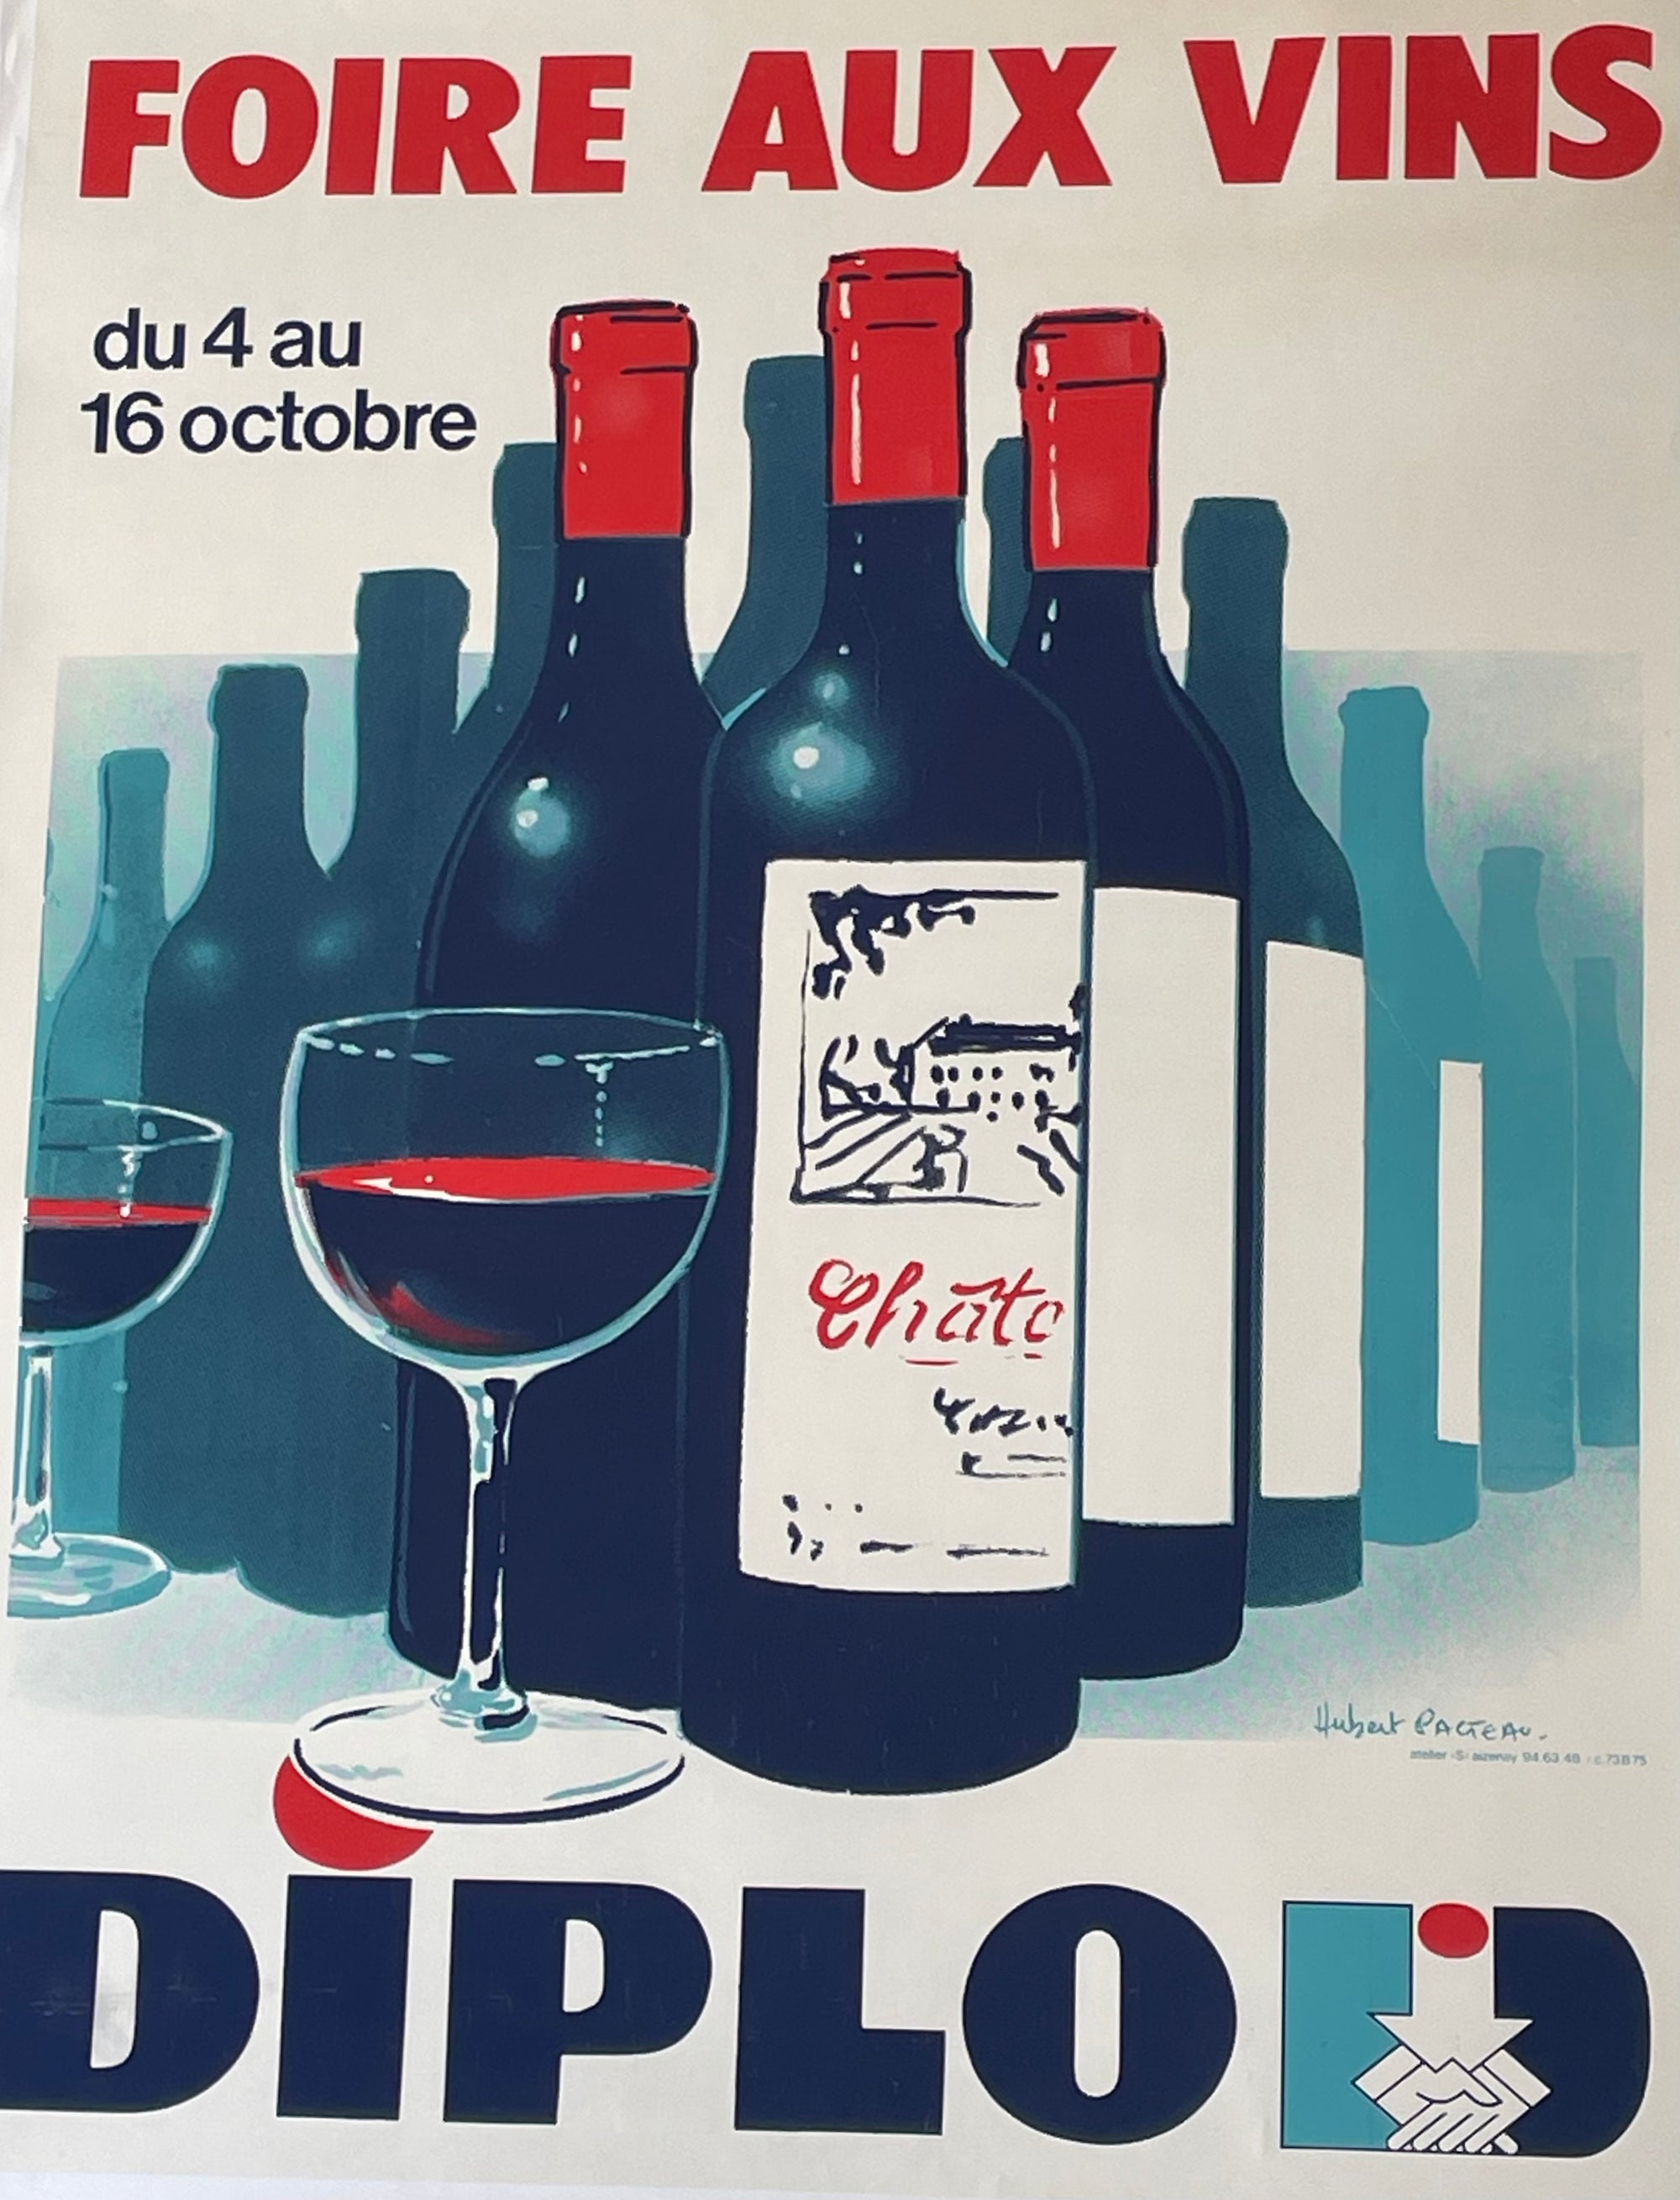 Foire Aux Vins Diplod by Pacteau